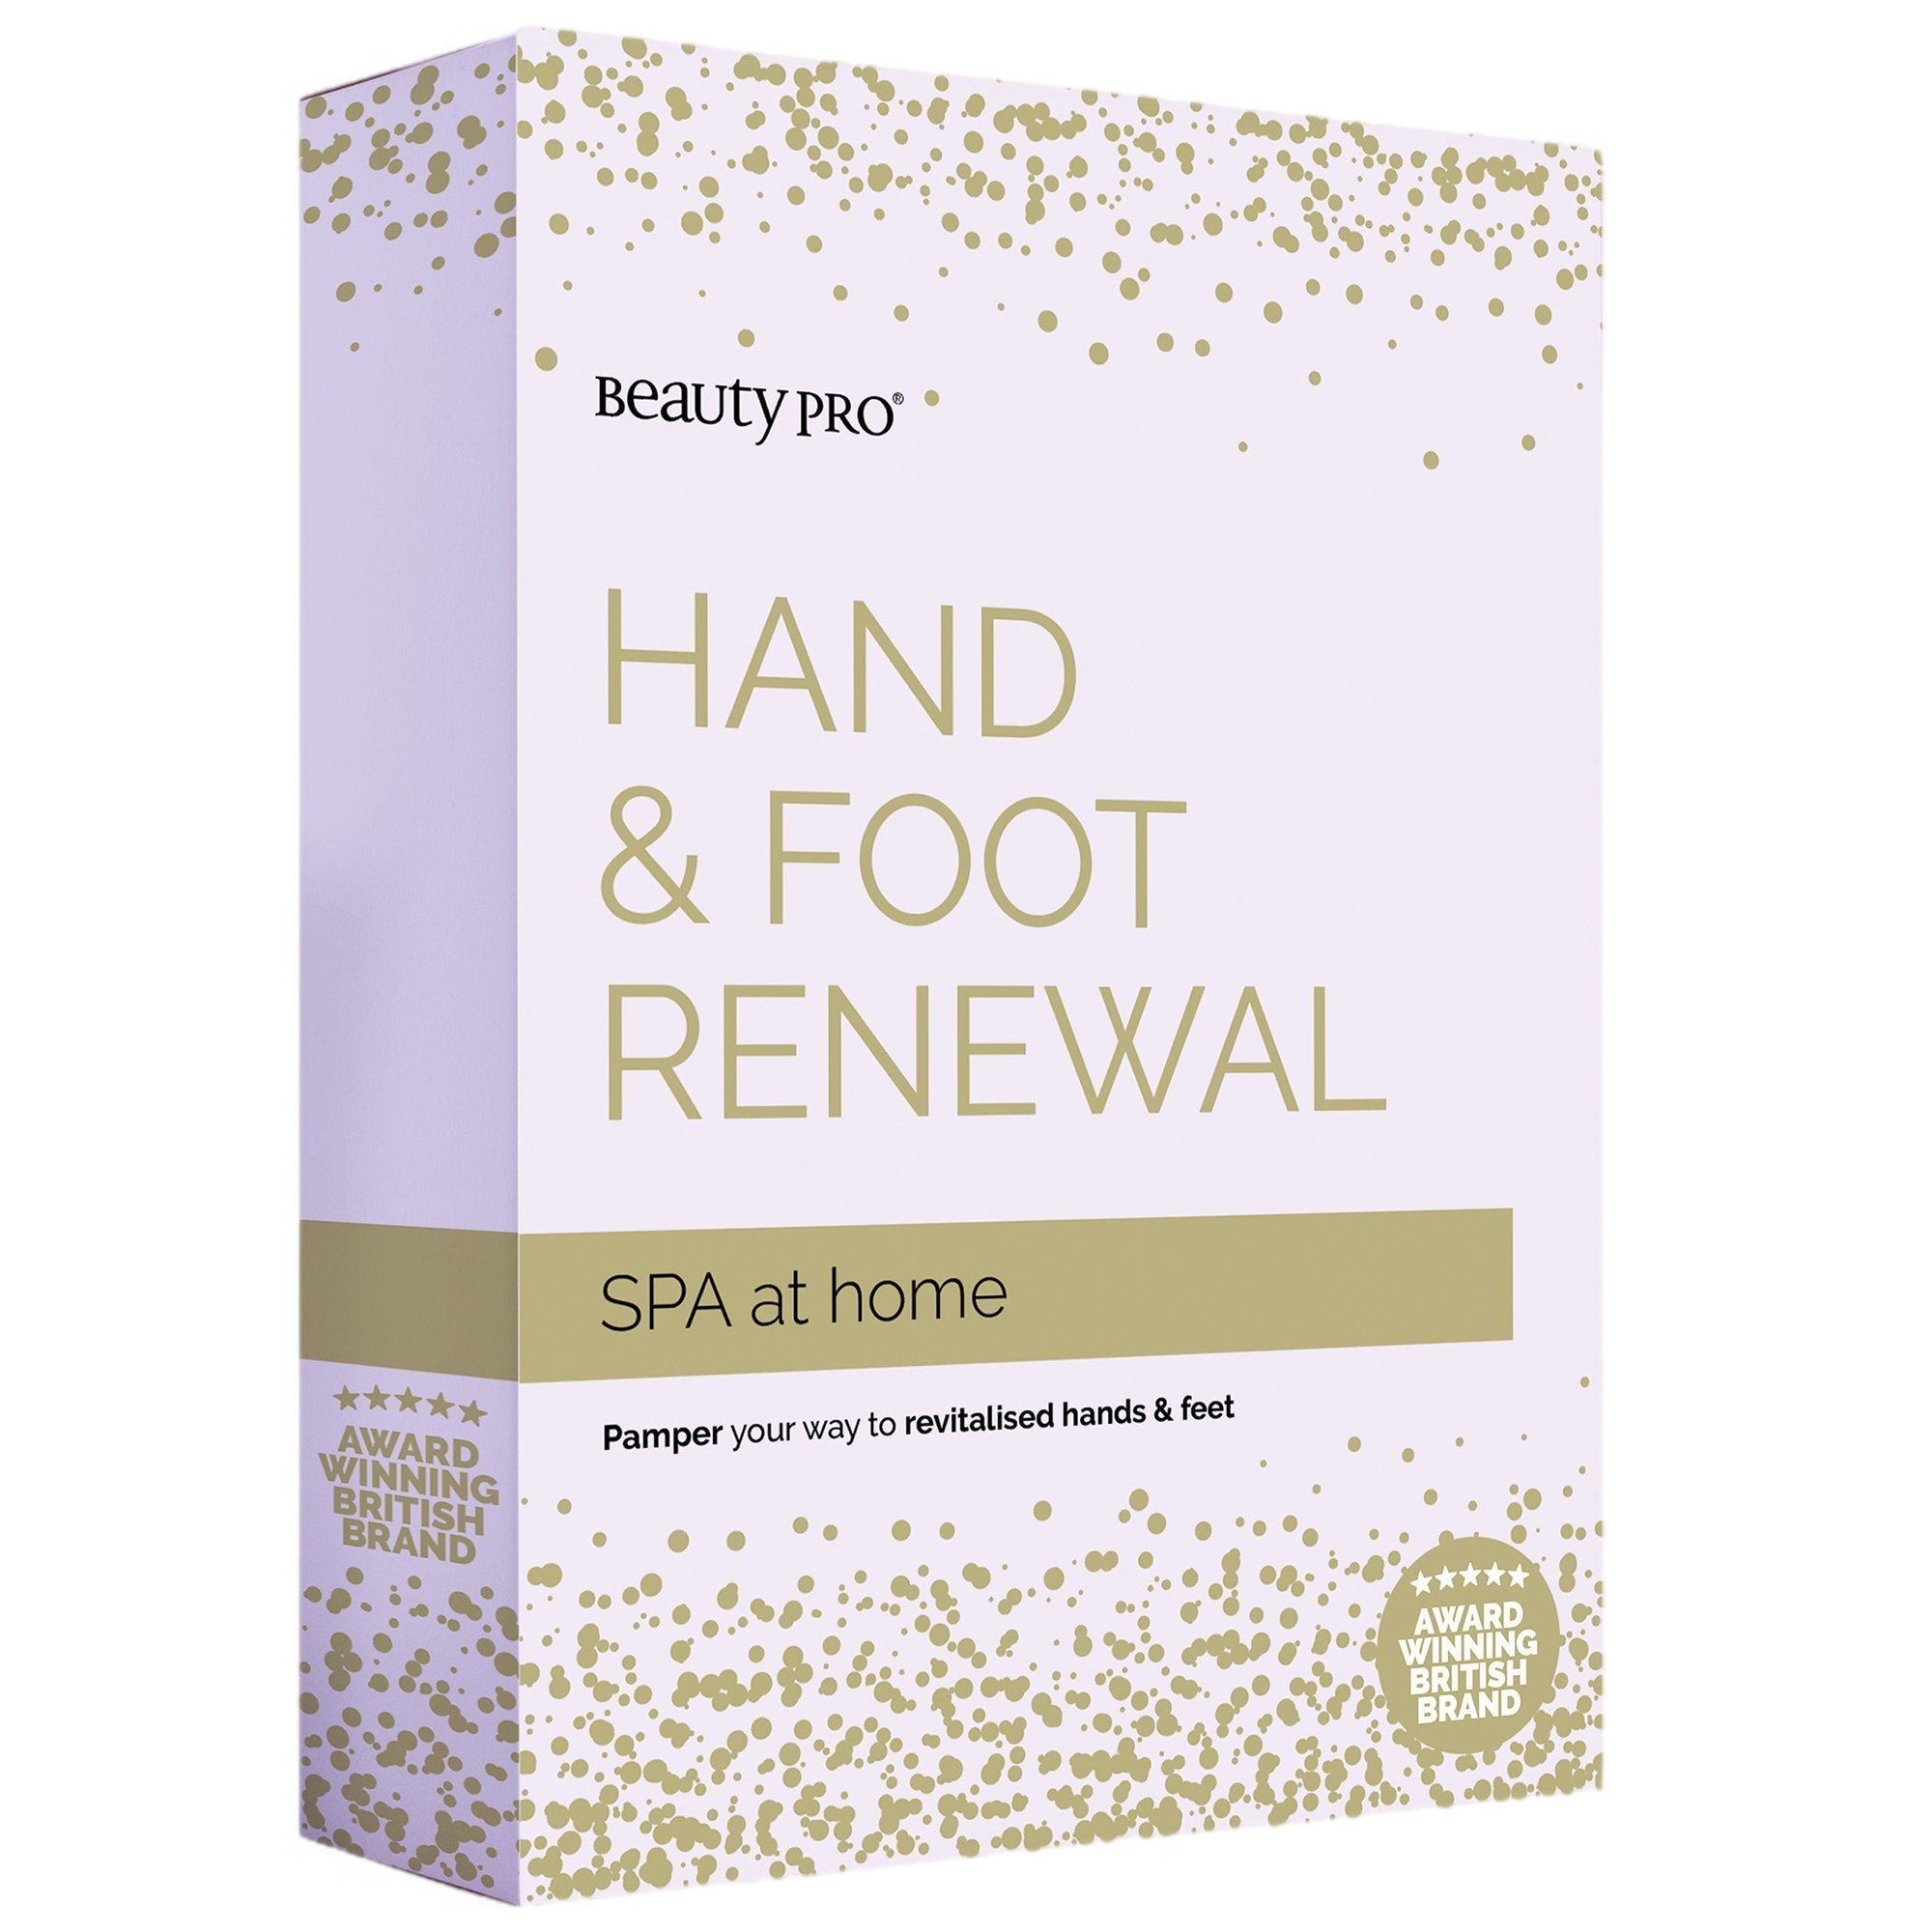 Beauty Pro SPA at home: Hand & Foot Renewal set